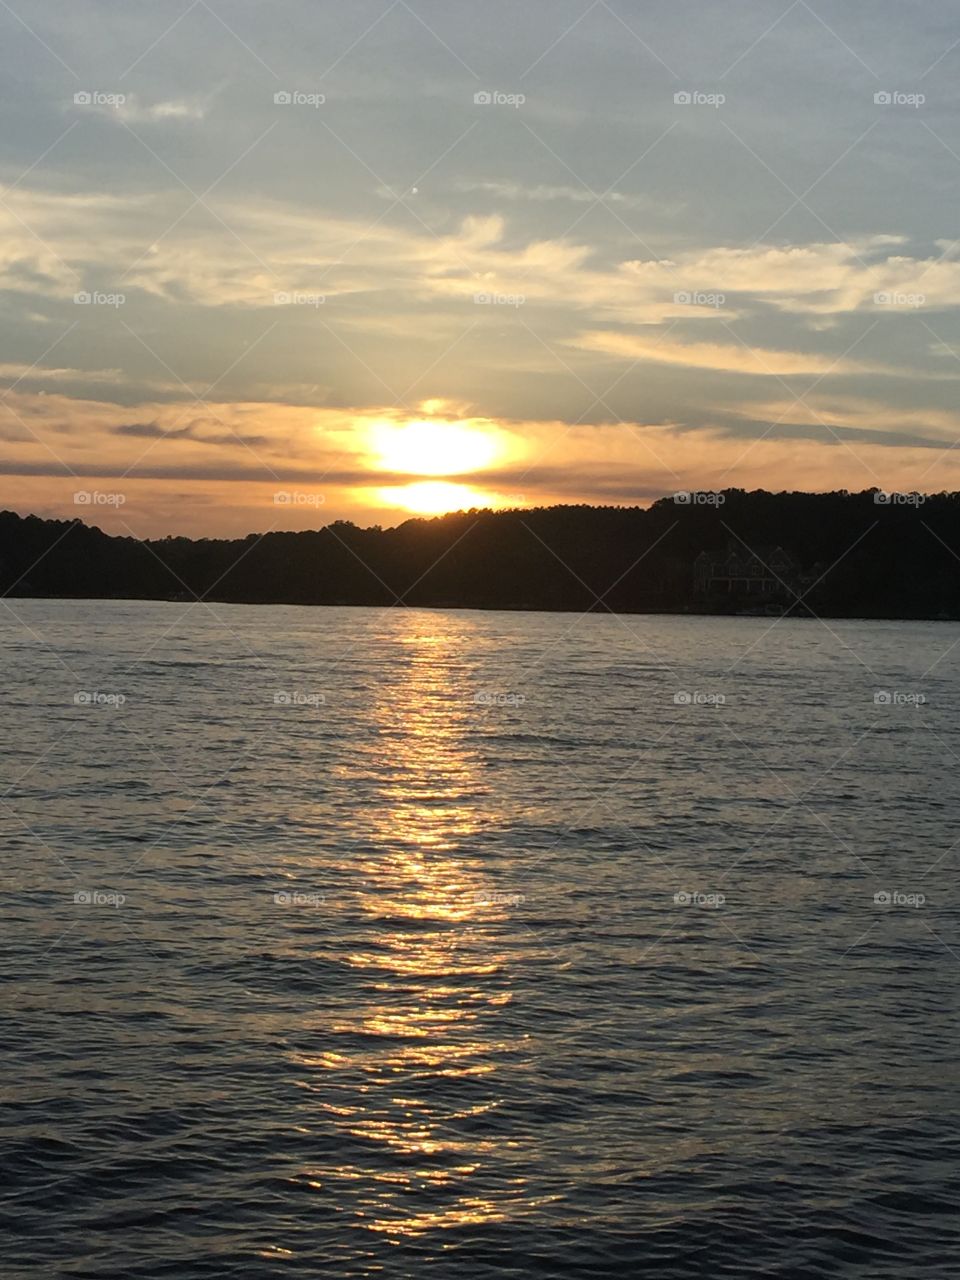 Sunset lake oconee Memorial Day 